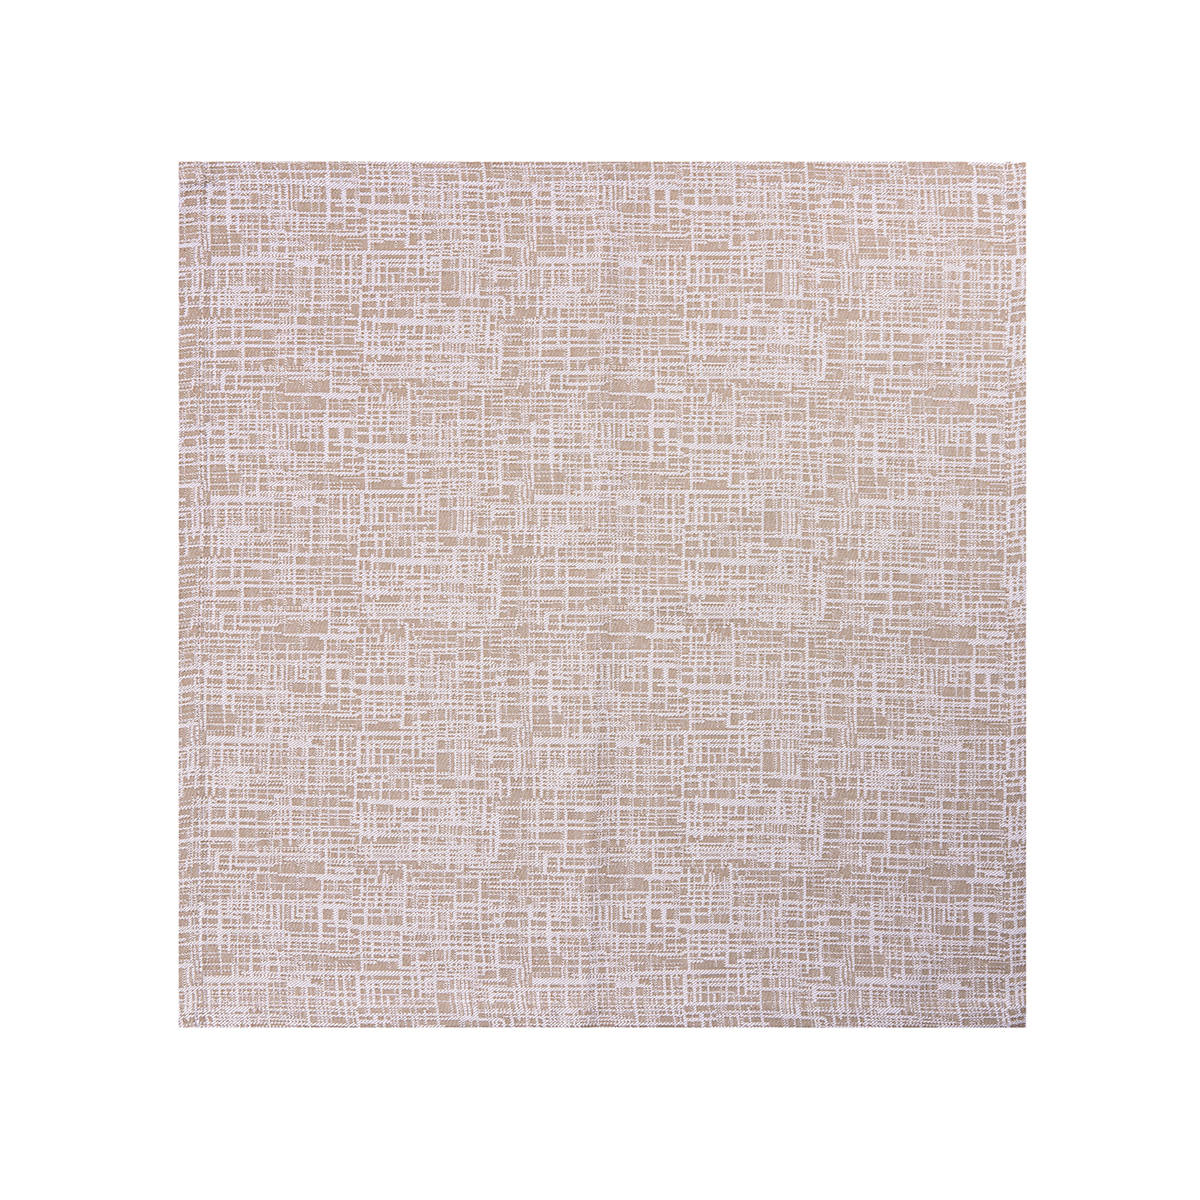 100% Cotton Grey Yarn Dyed Imitation Bamboo Yarn Napkin